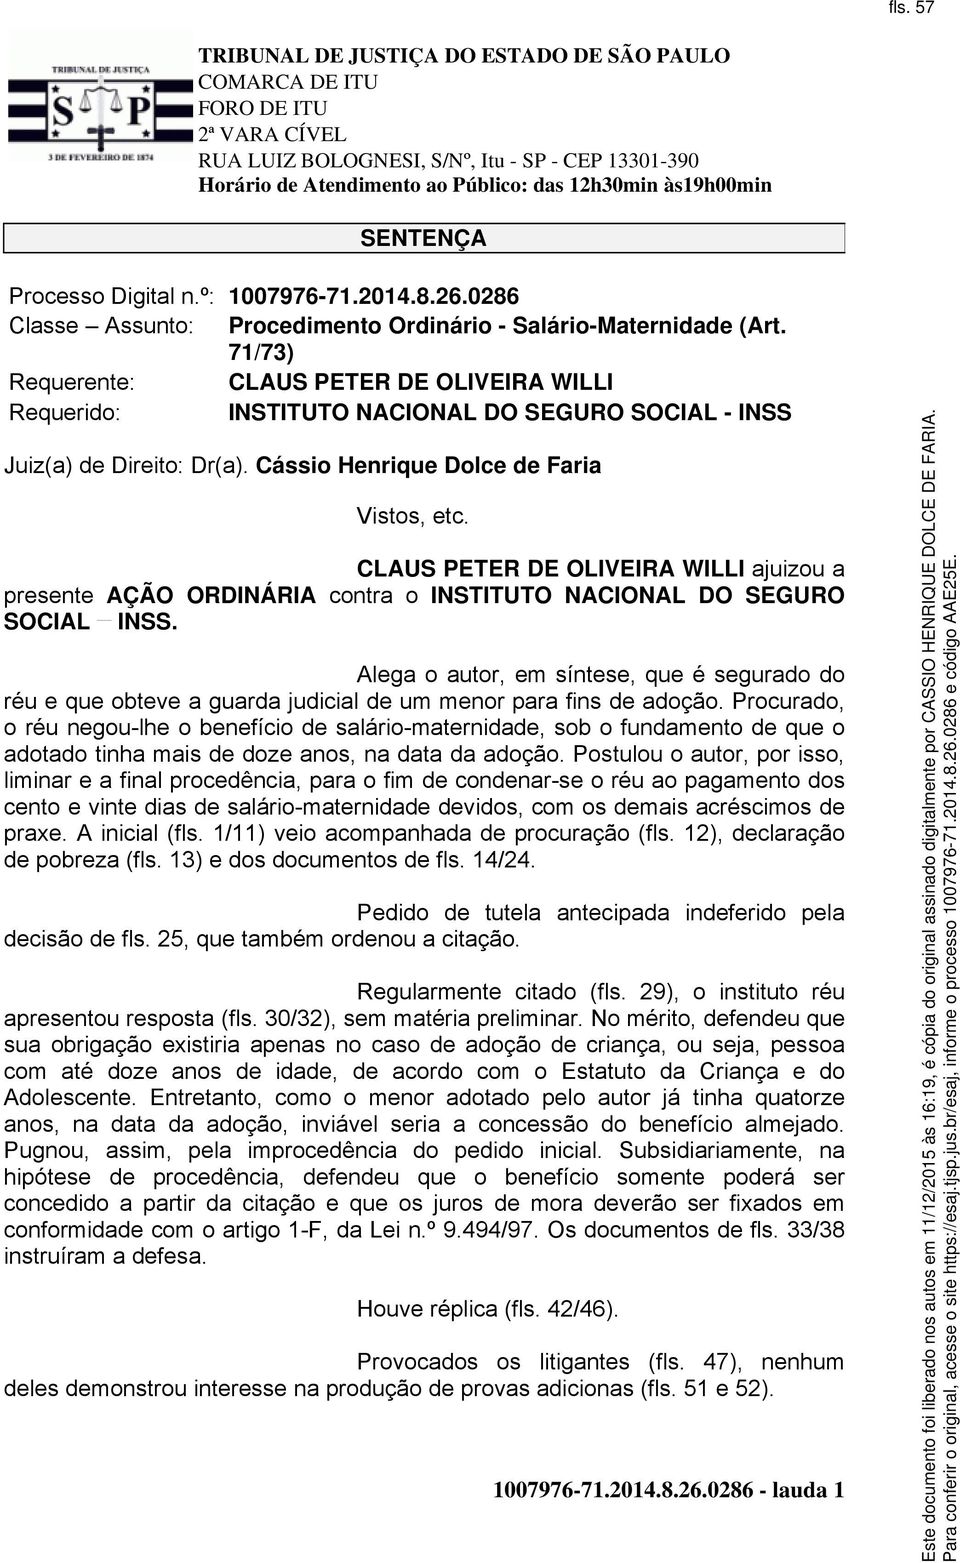 CLAUS PETER DE OLIVEIRA WILLI ajuizou a presente AÇÃO ORDINÁRIA contra o INSTITUTO NACIONAL DO SEGURO SOCIAL INSS.